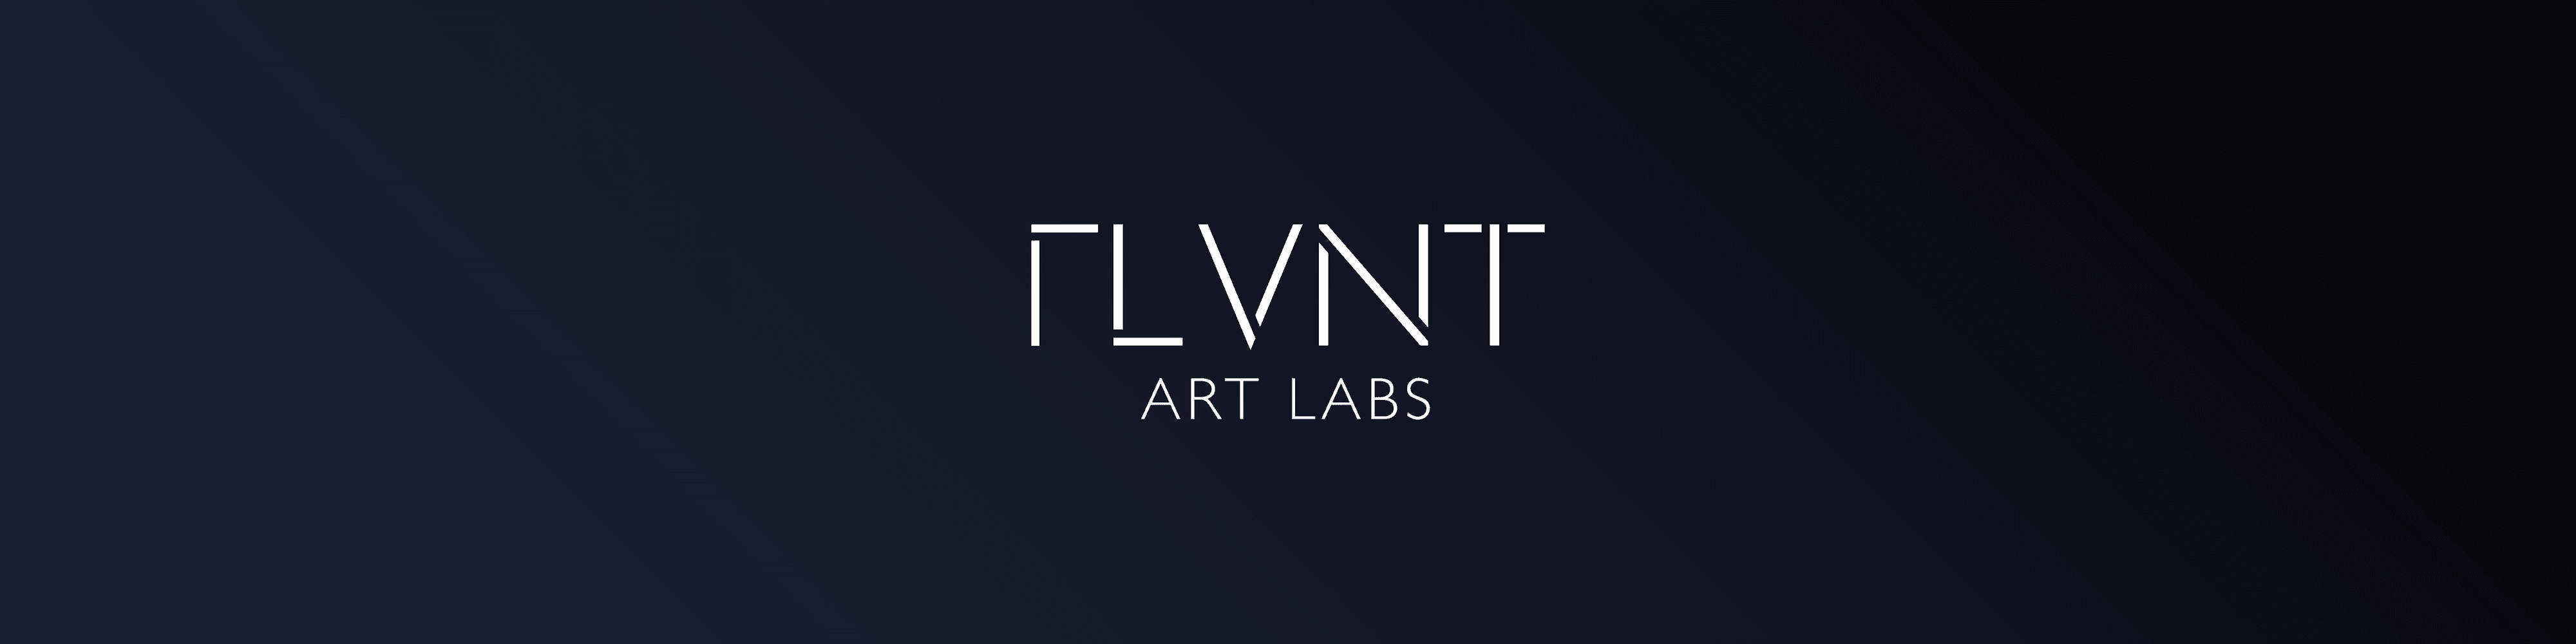 RLVNT-Labs banner